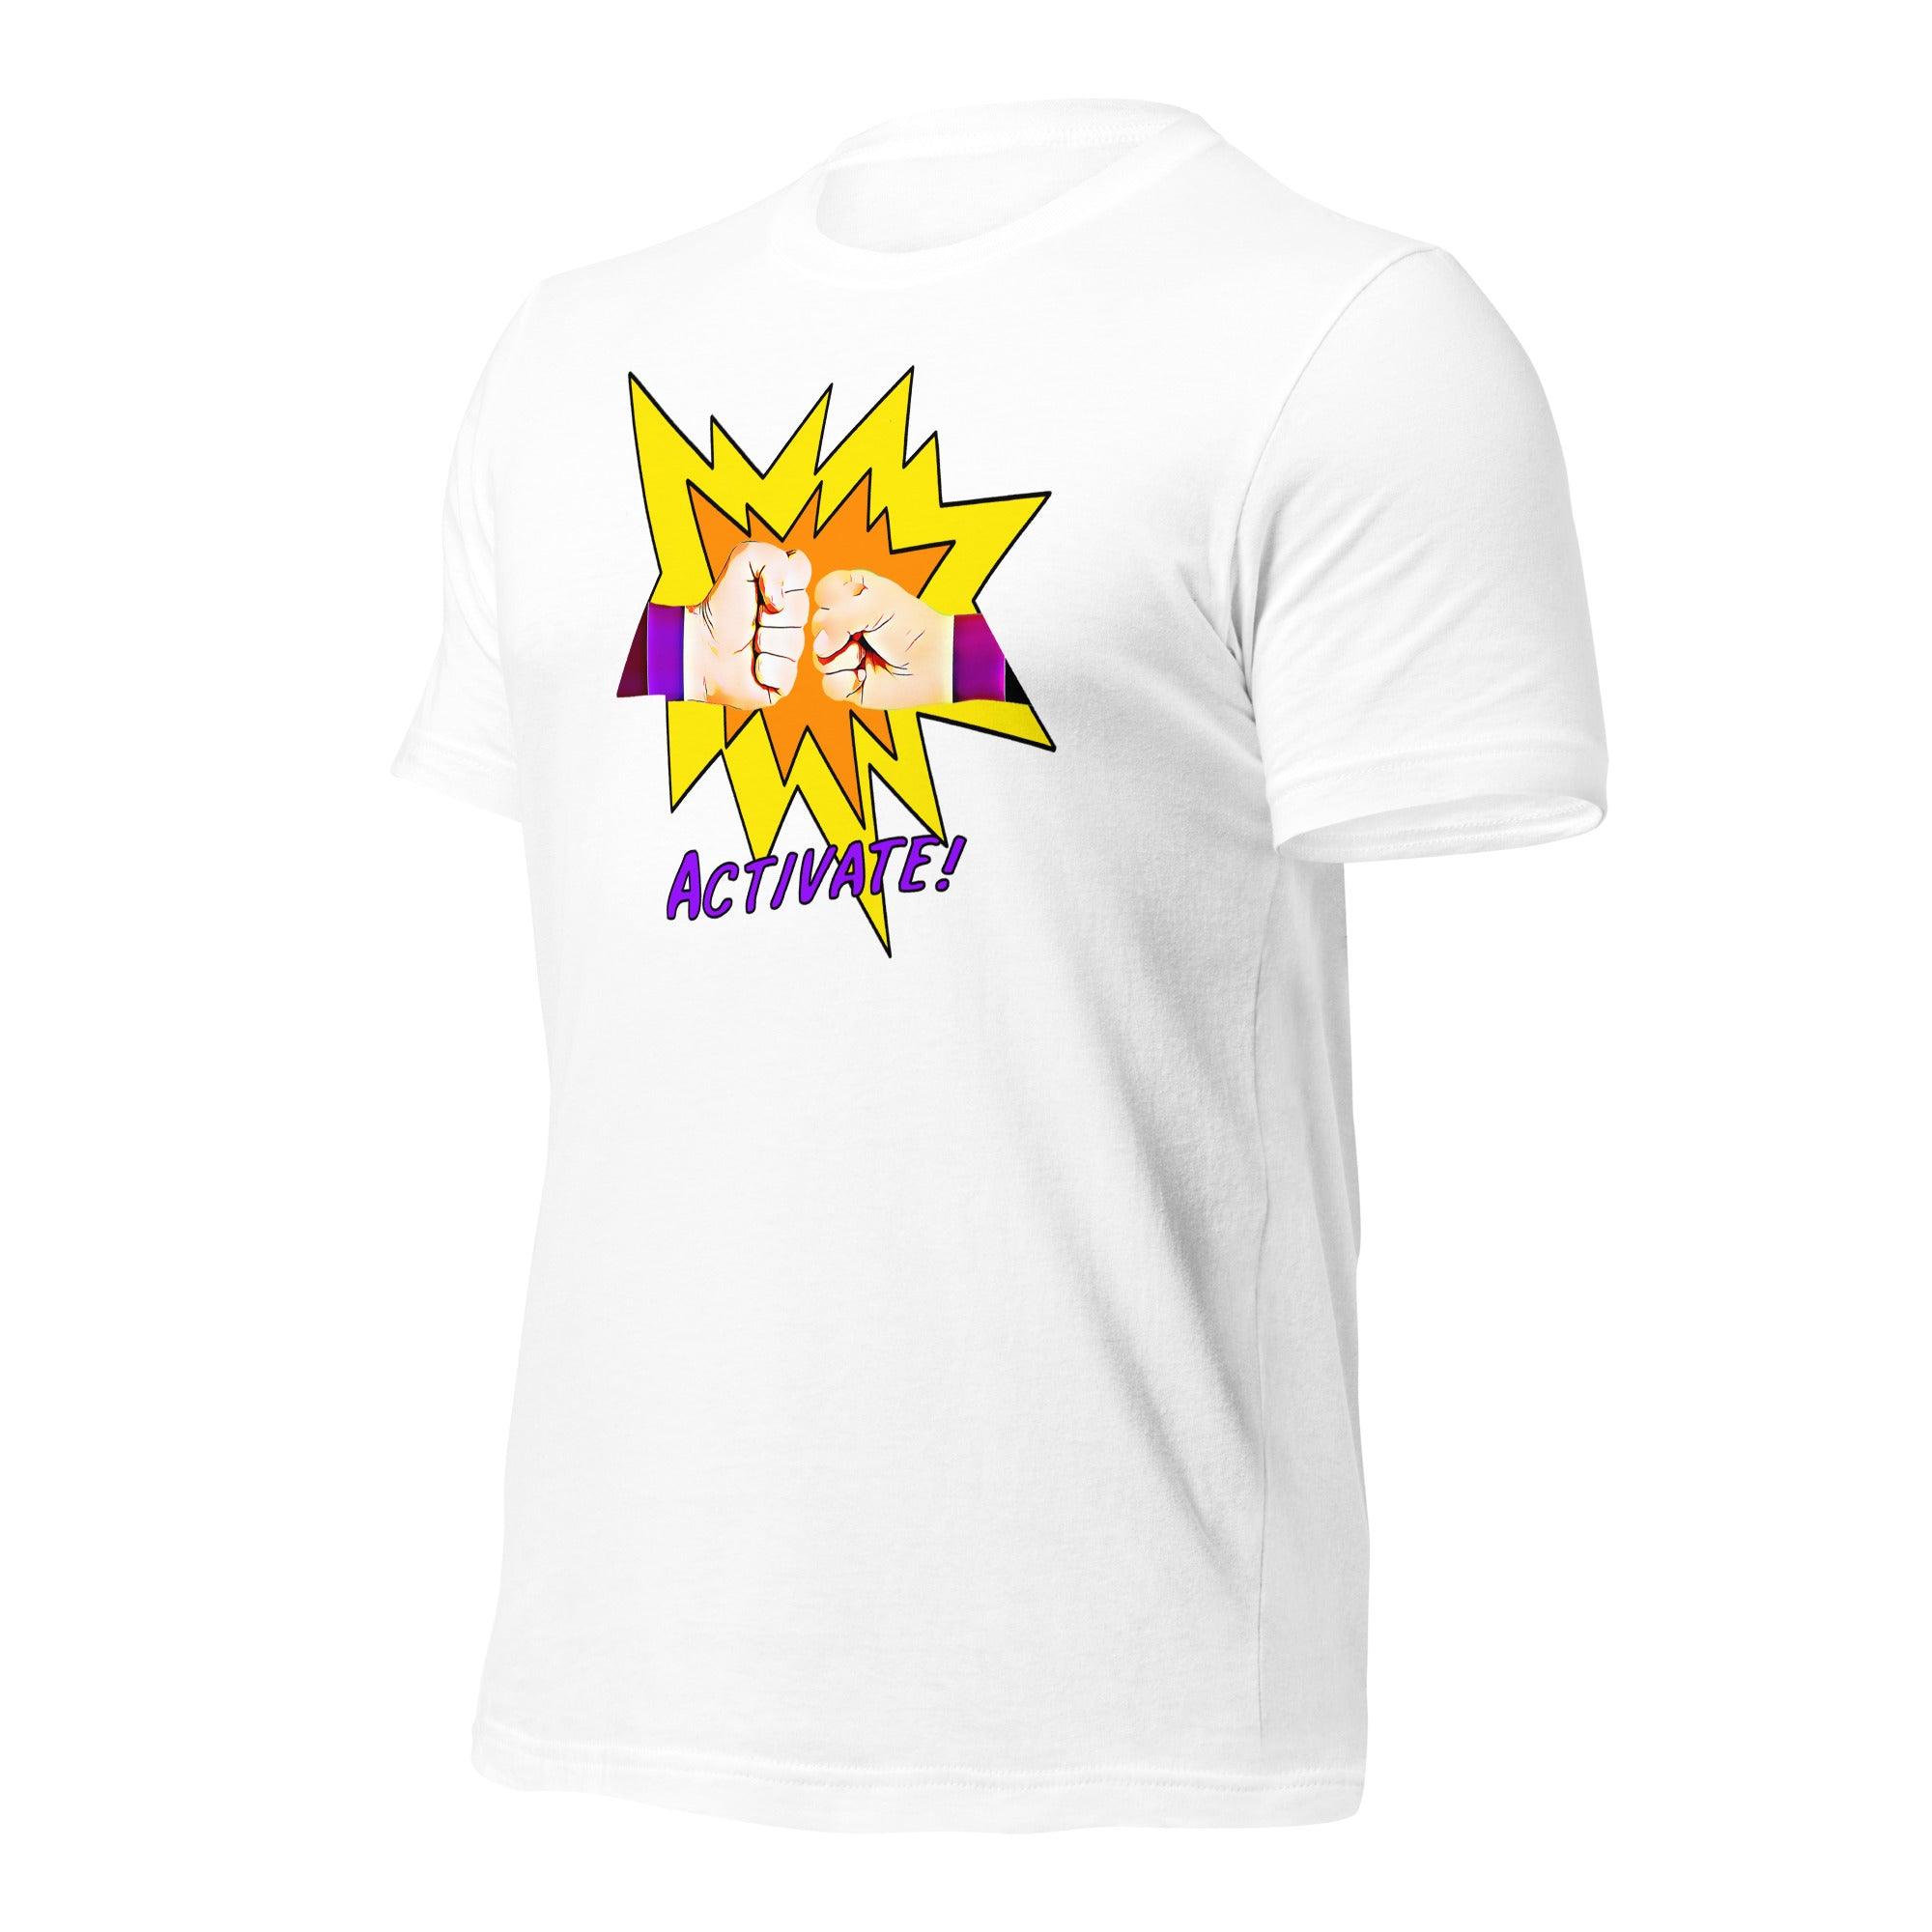 Activate! Unisex t-shirt